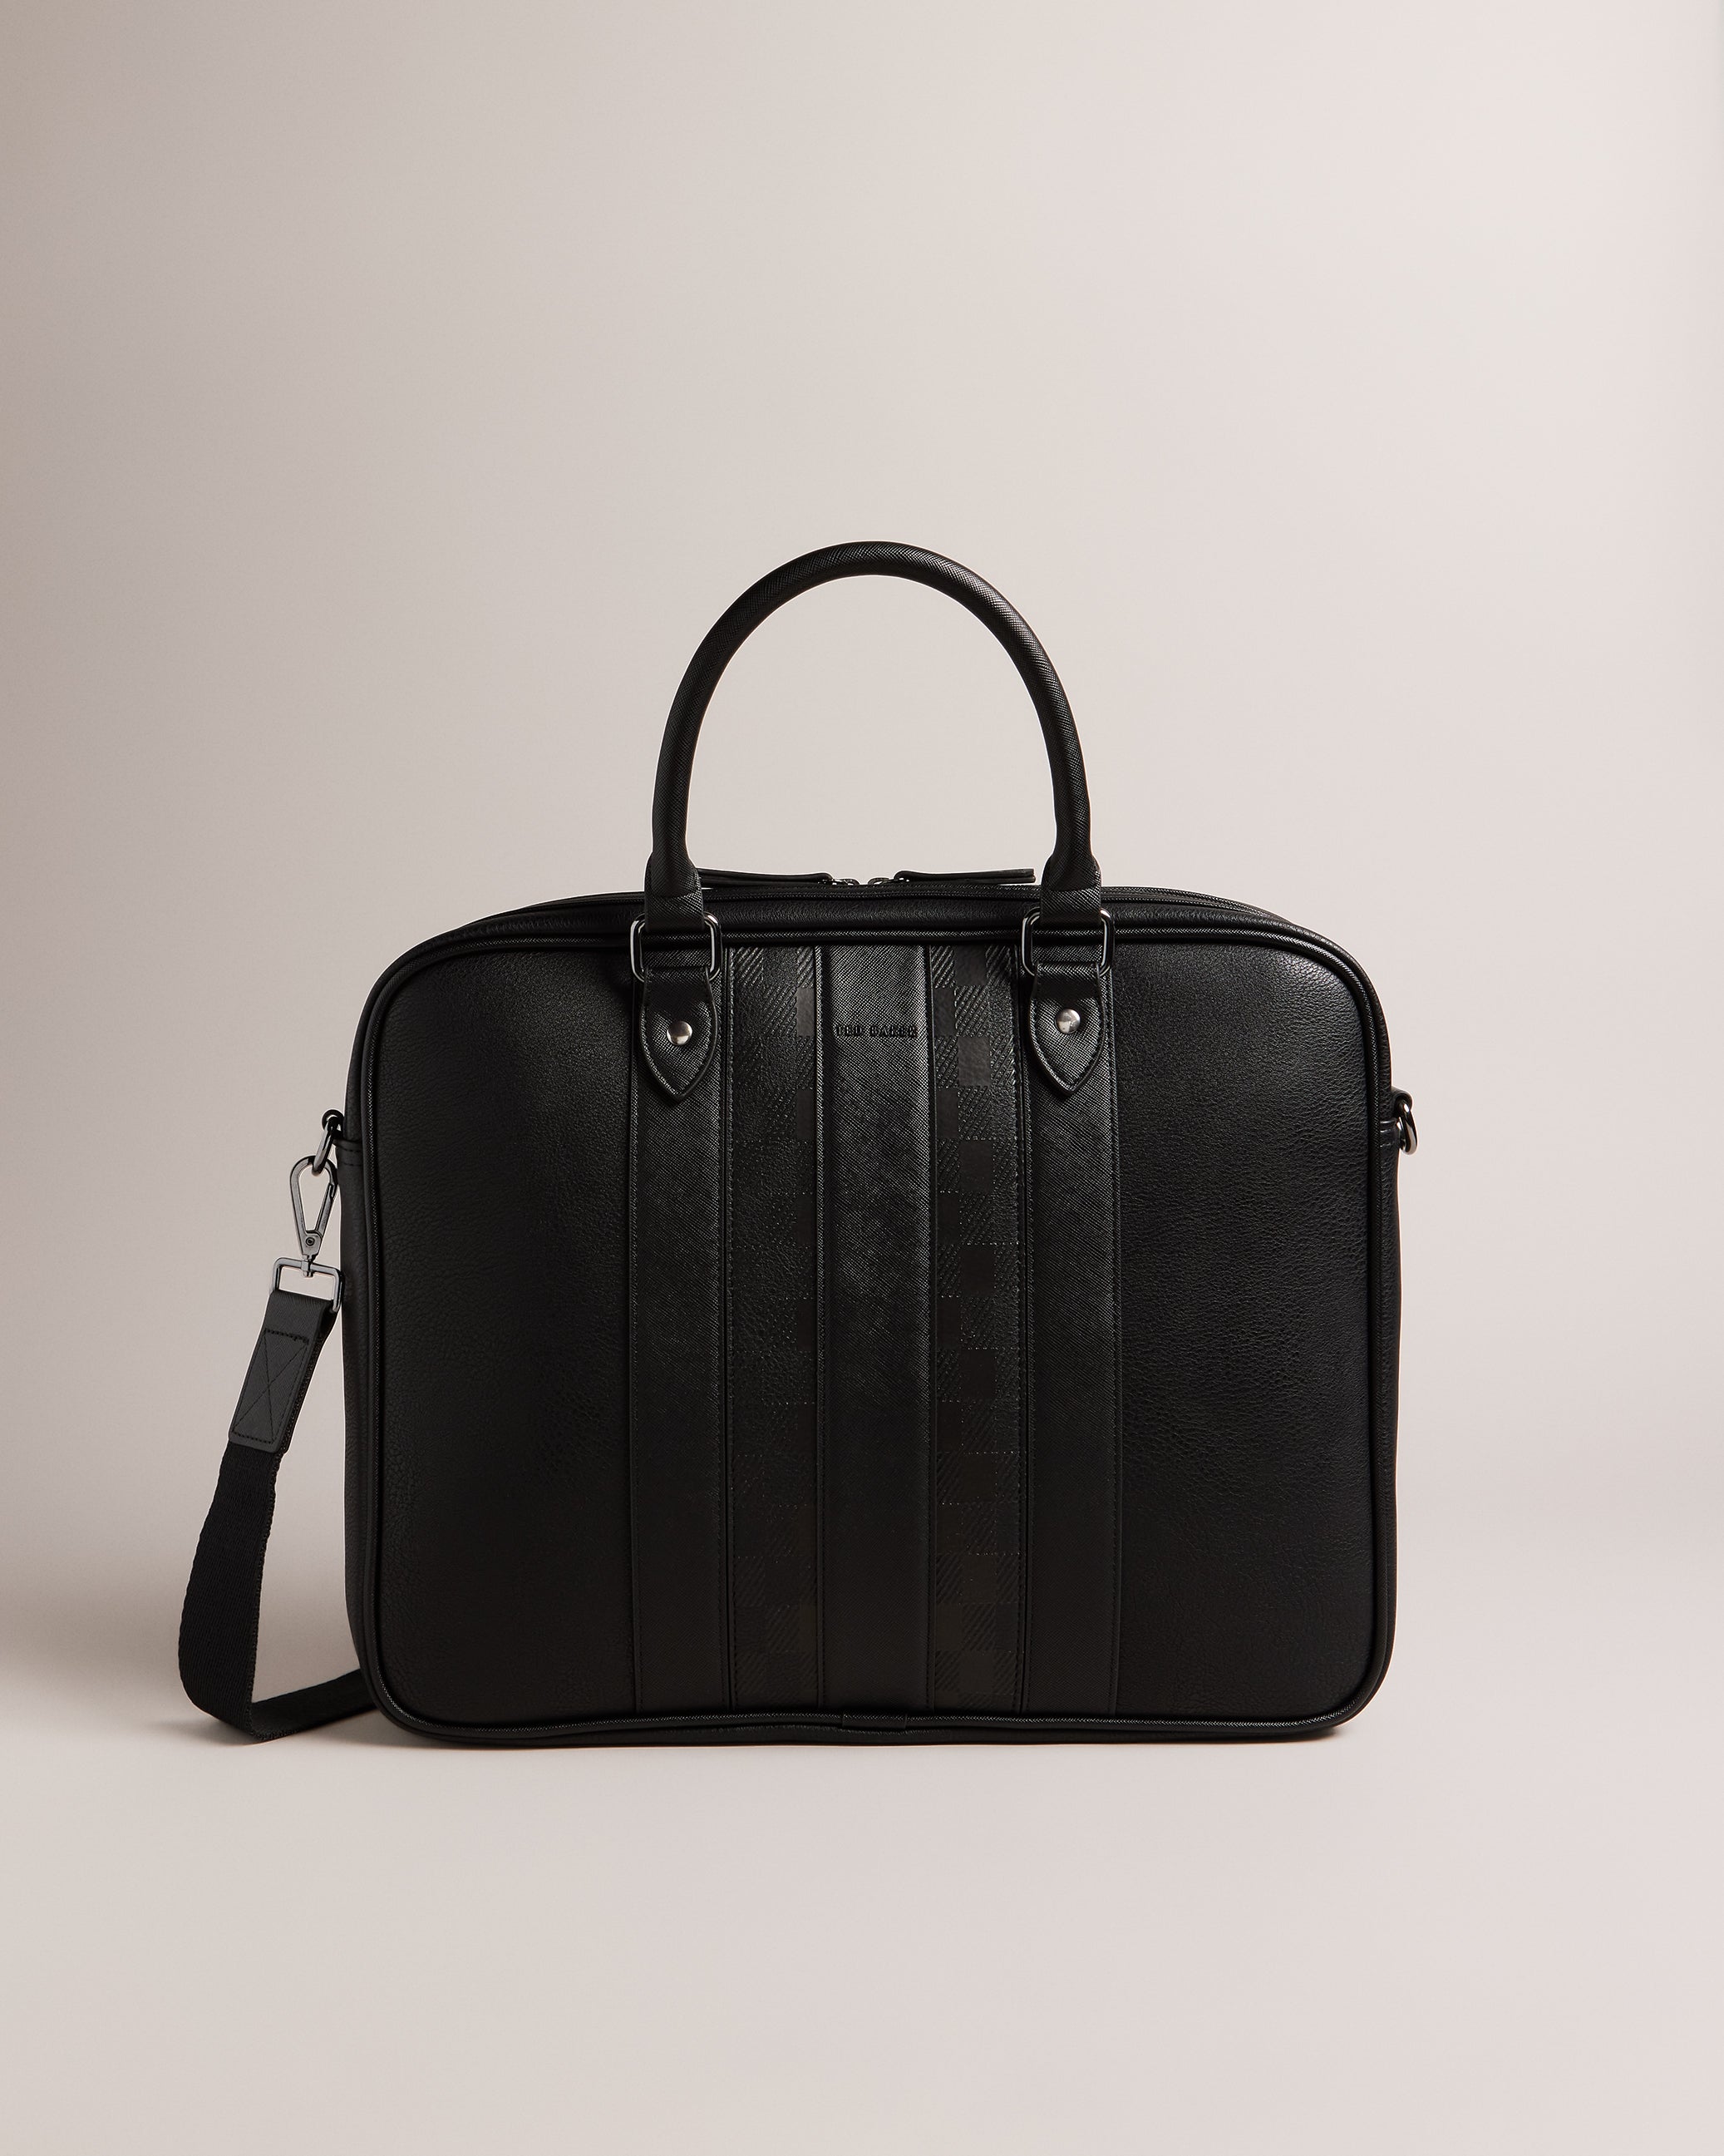 Ollarie | Vintage inspired handbags, Ted baker handbag, Handbag